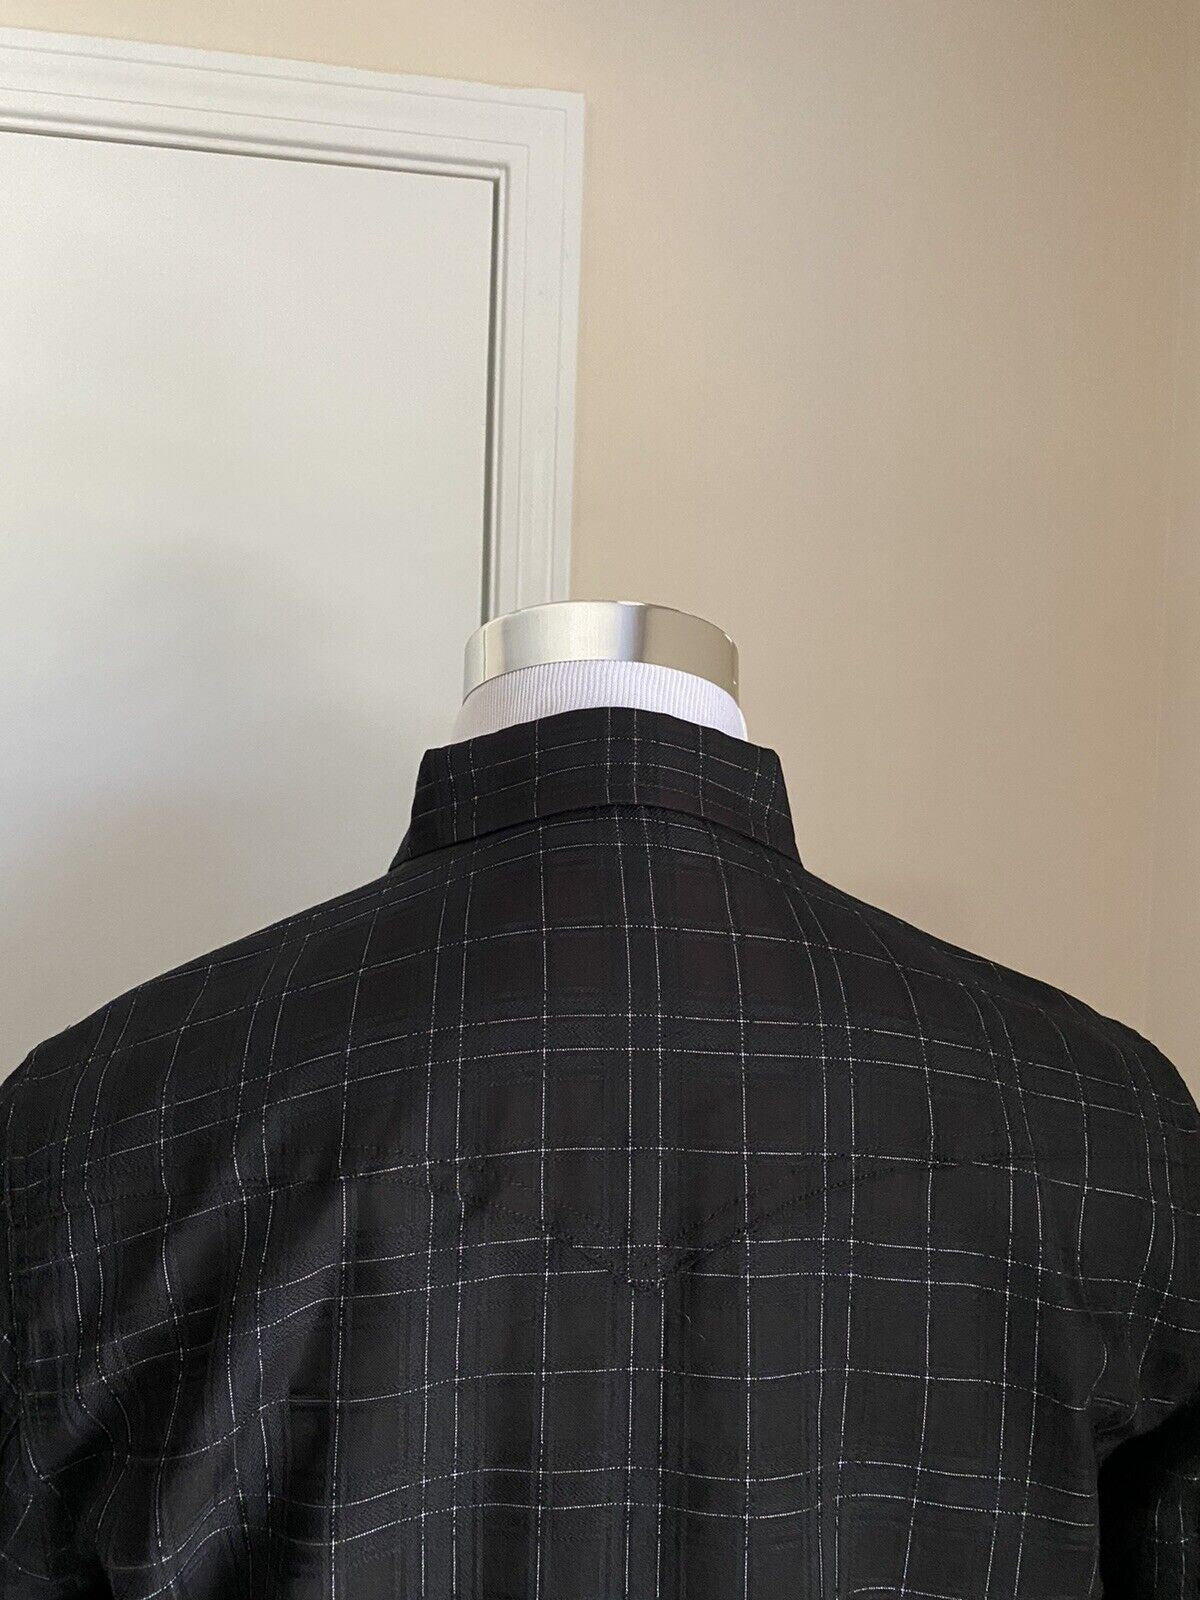 Neu mit Etikett: 850 $ Saint Laurent Slim Fit Westernhemd für Herren in glänzendem Schwarz XL Italien